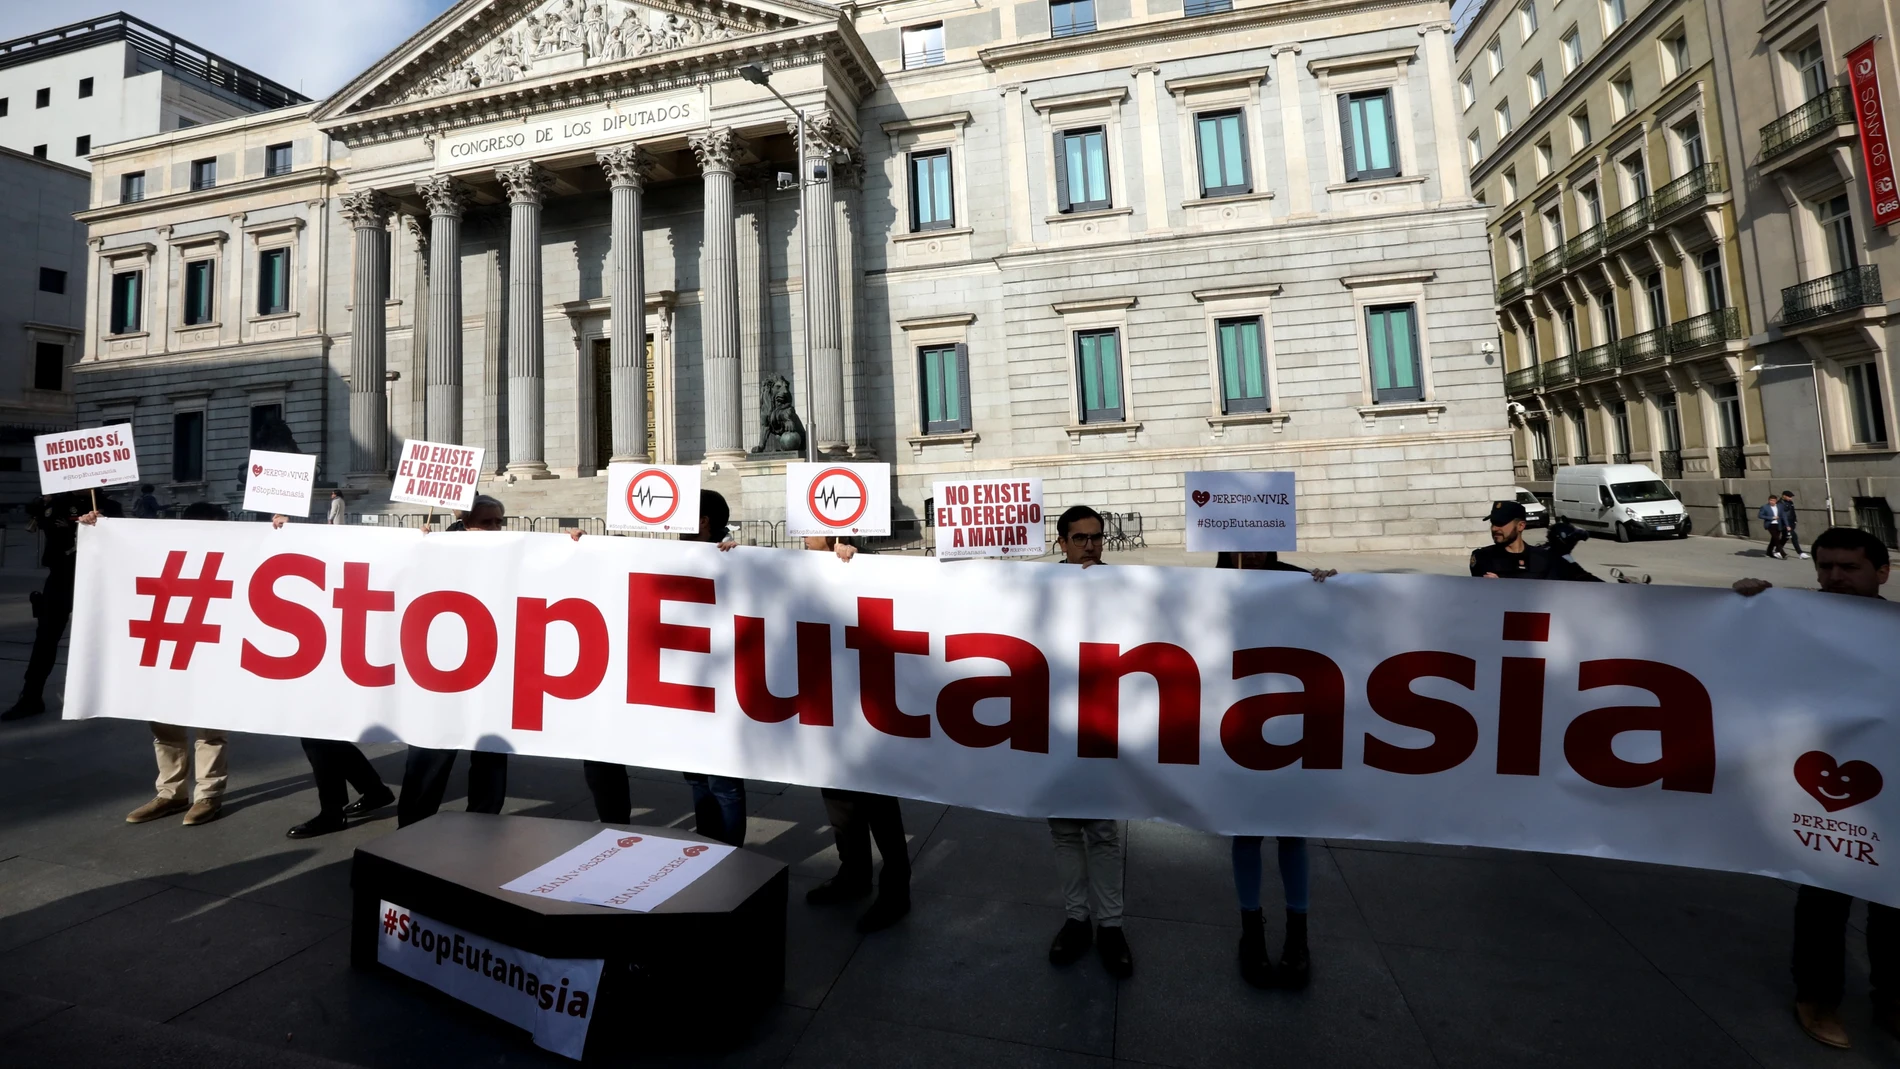 Madrid . 11/02/2020 . Congreso de ls diputados . Protesta en contra de la eutanasia 